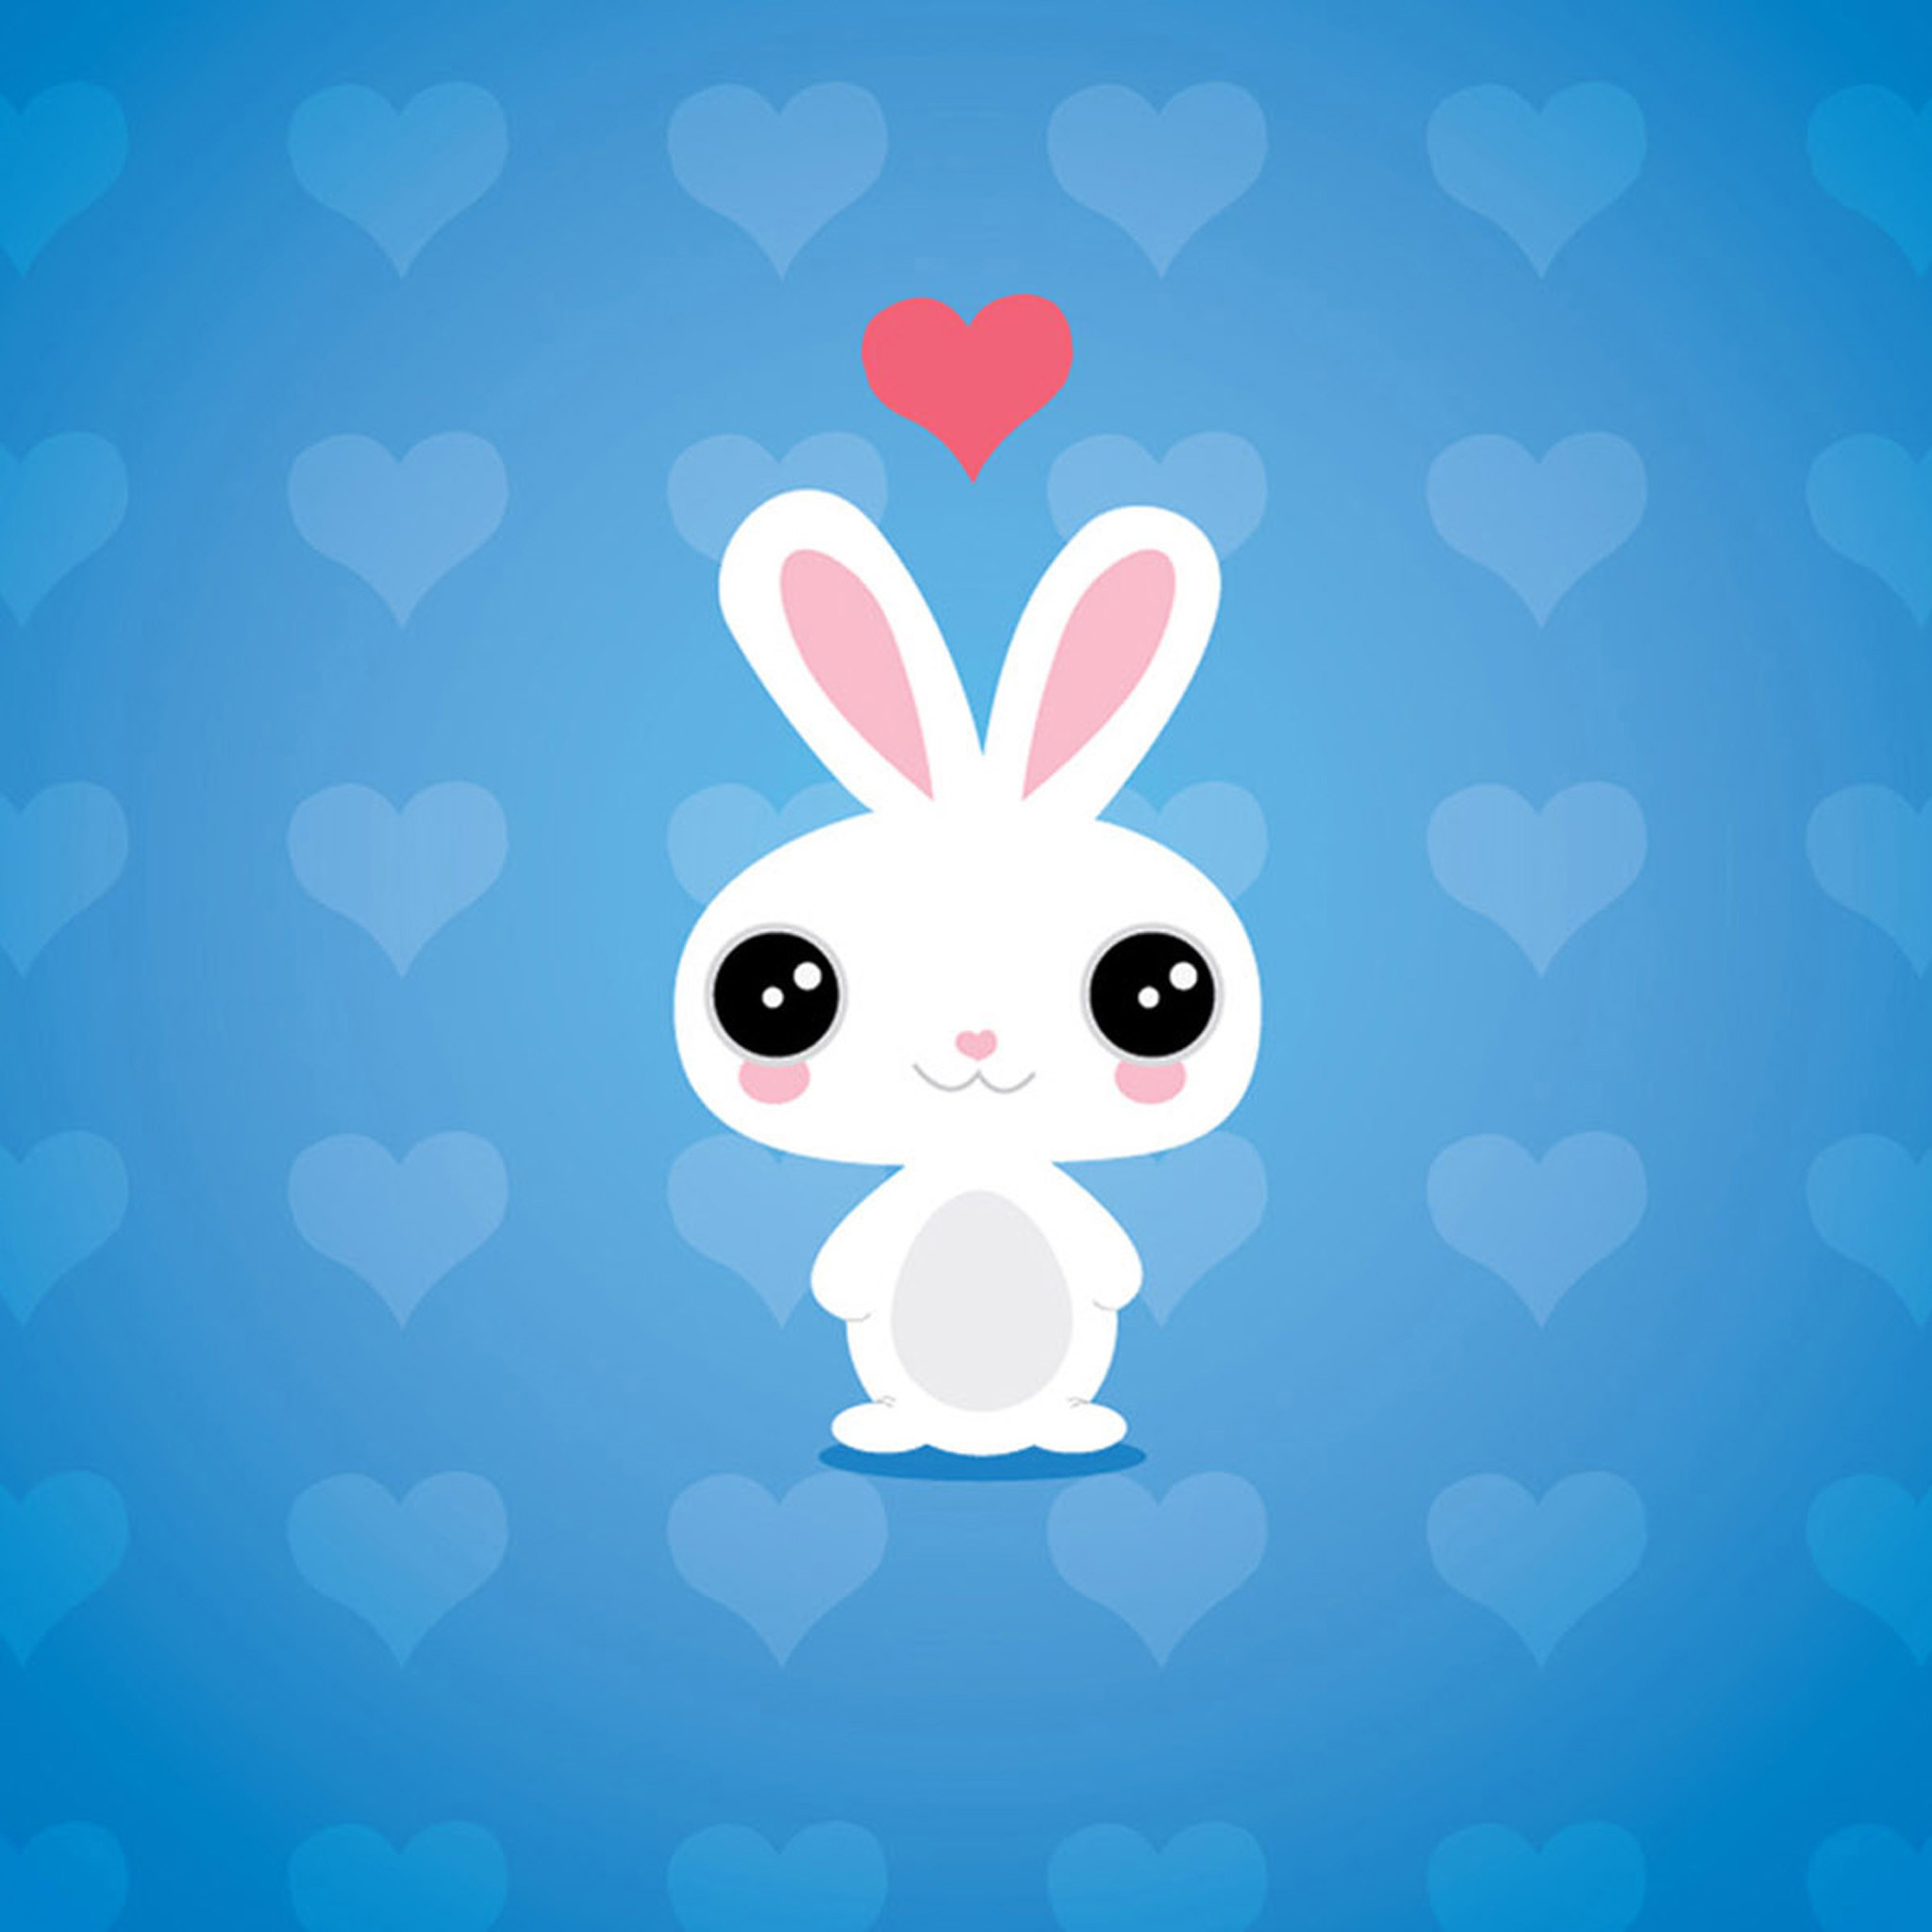 귀여운 만화 벽지,만화,푸른,토끼,토끼와 토끼,삽화